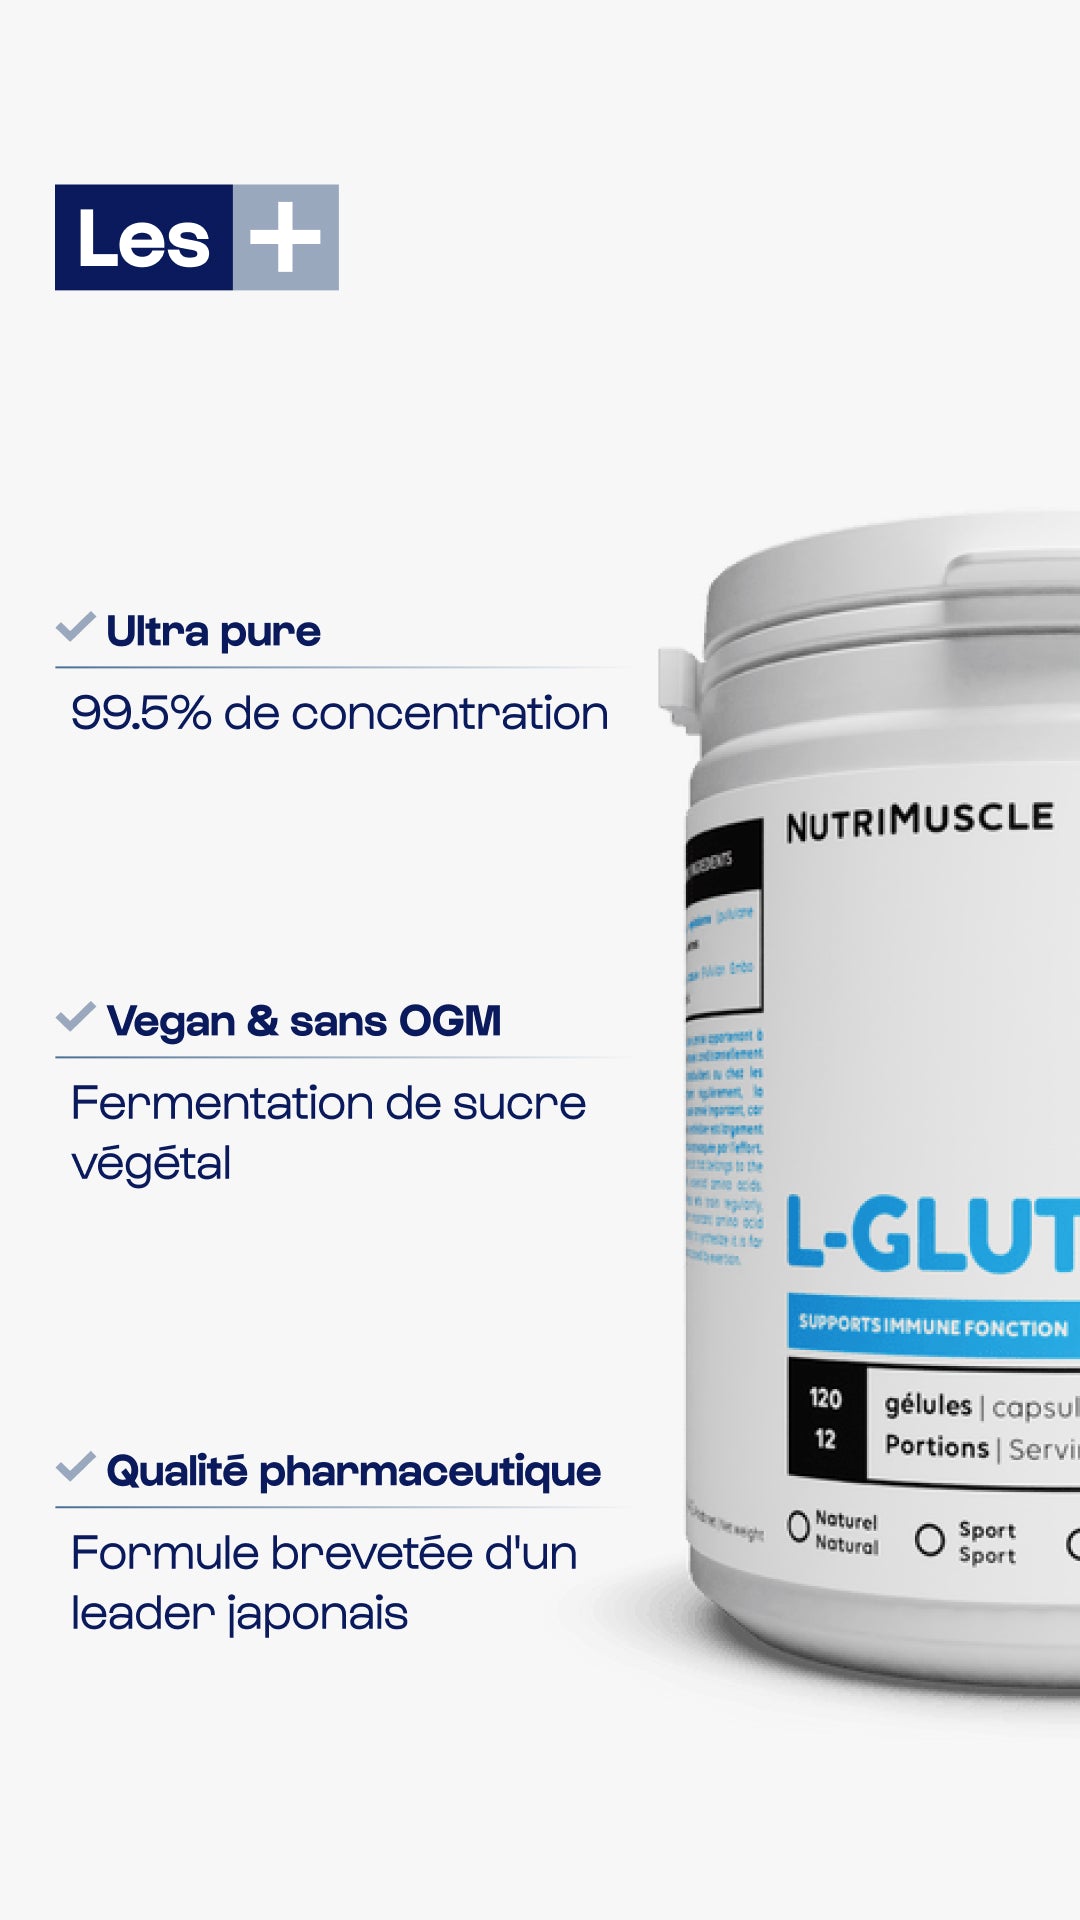 Glutamine (l-glutamine) in capsules